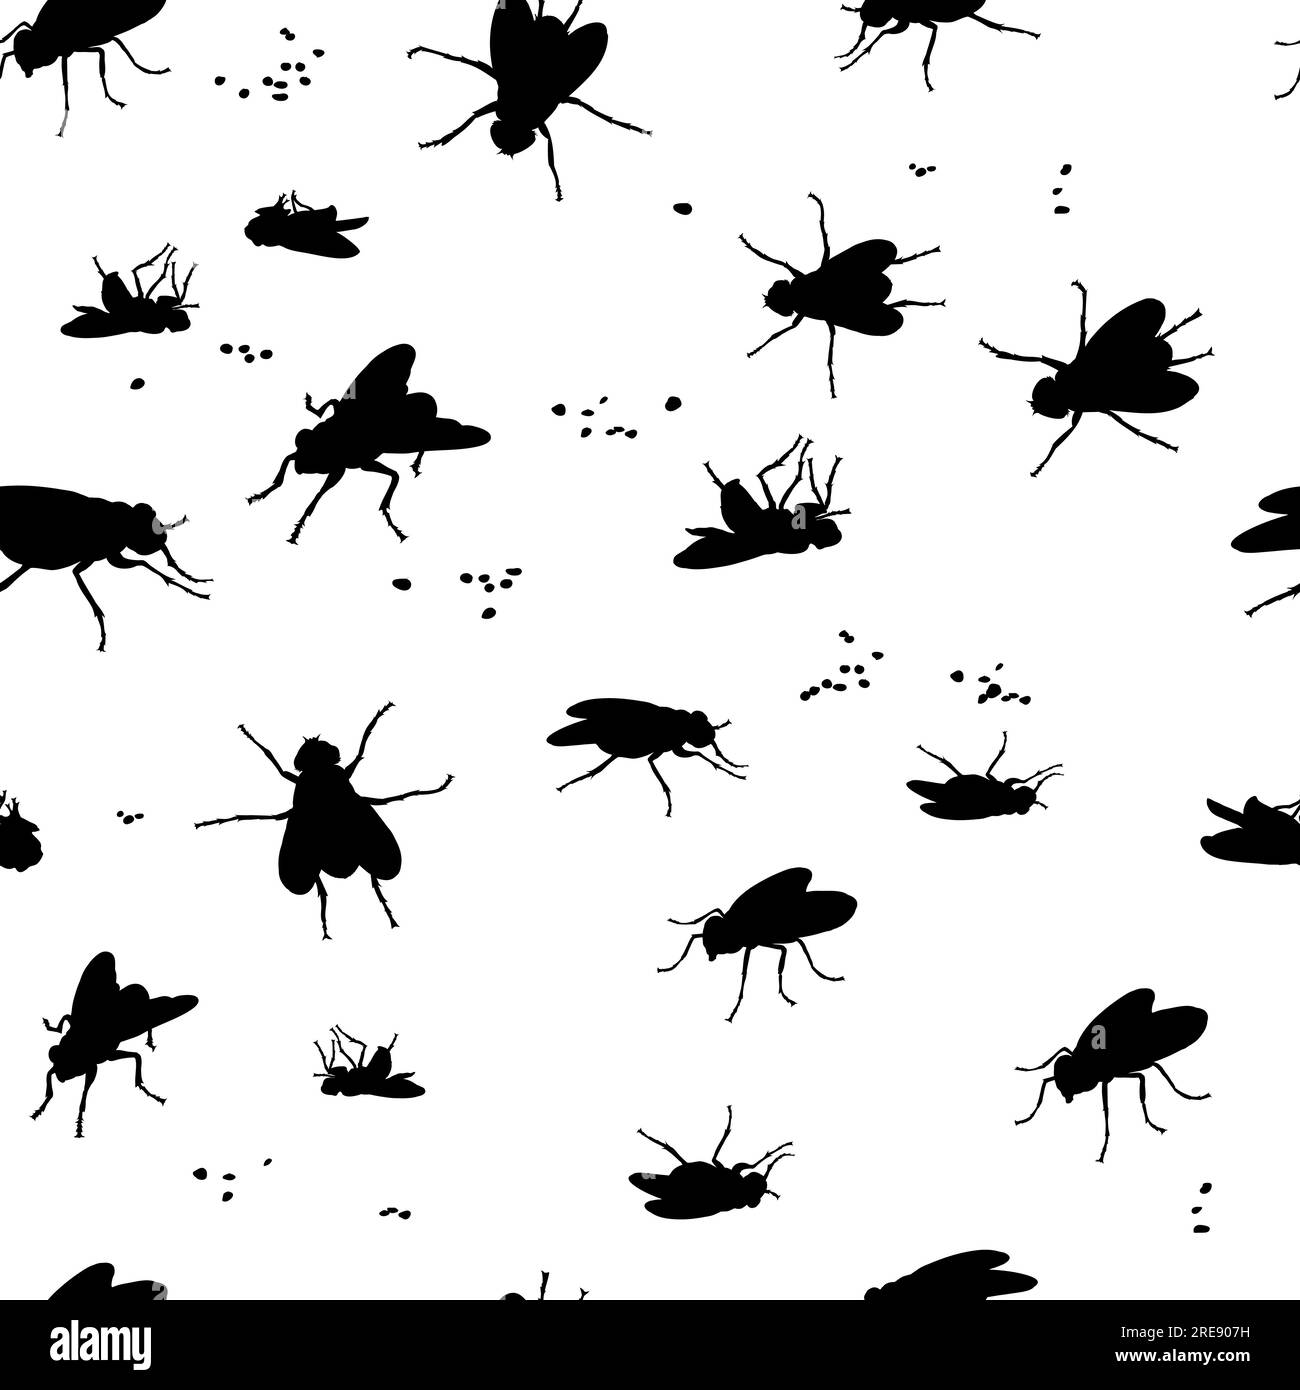 la imagen de una mosca en diferentes poses, en movimiento y escorzo, dibujo en blanco y negro, silueta, vector, patrón Ilustración del Vector